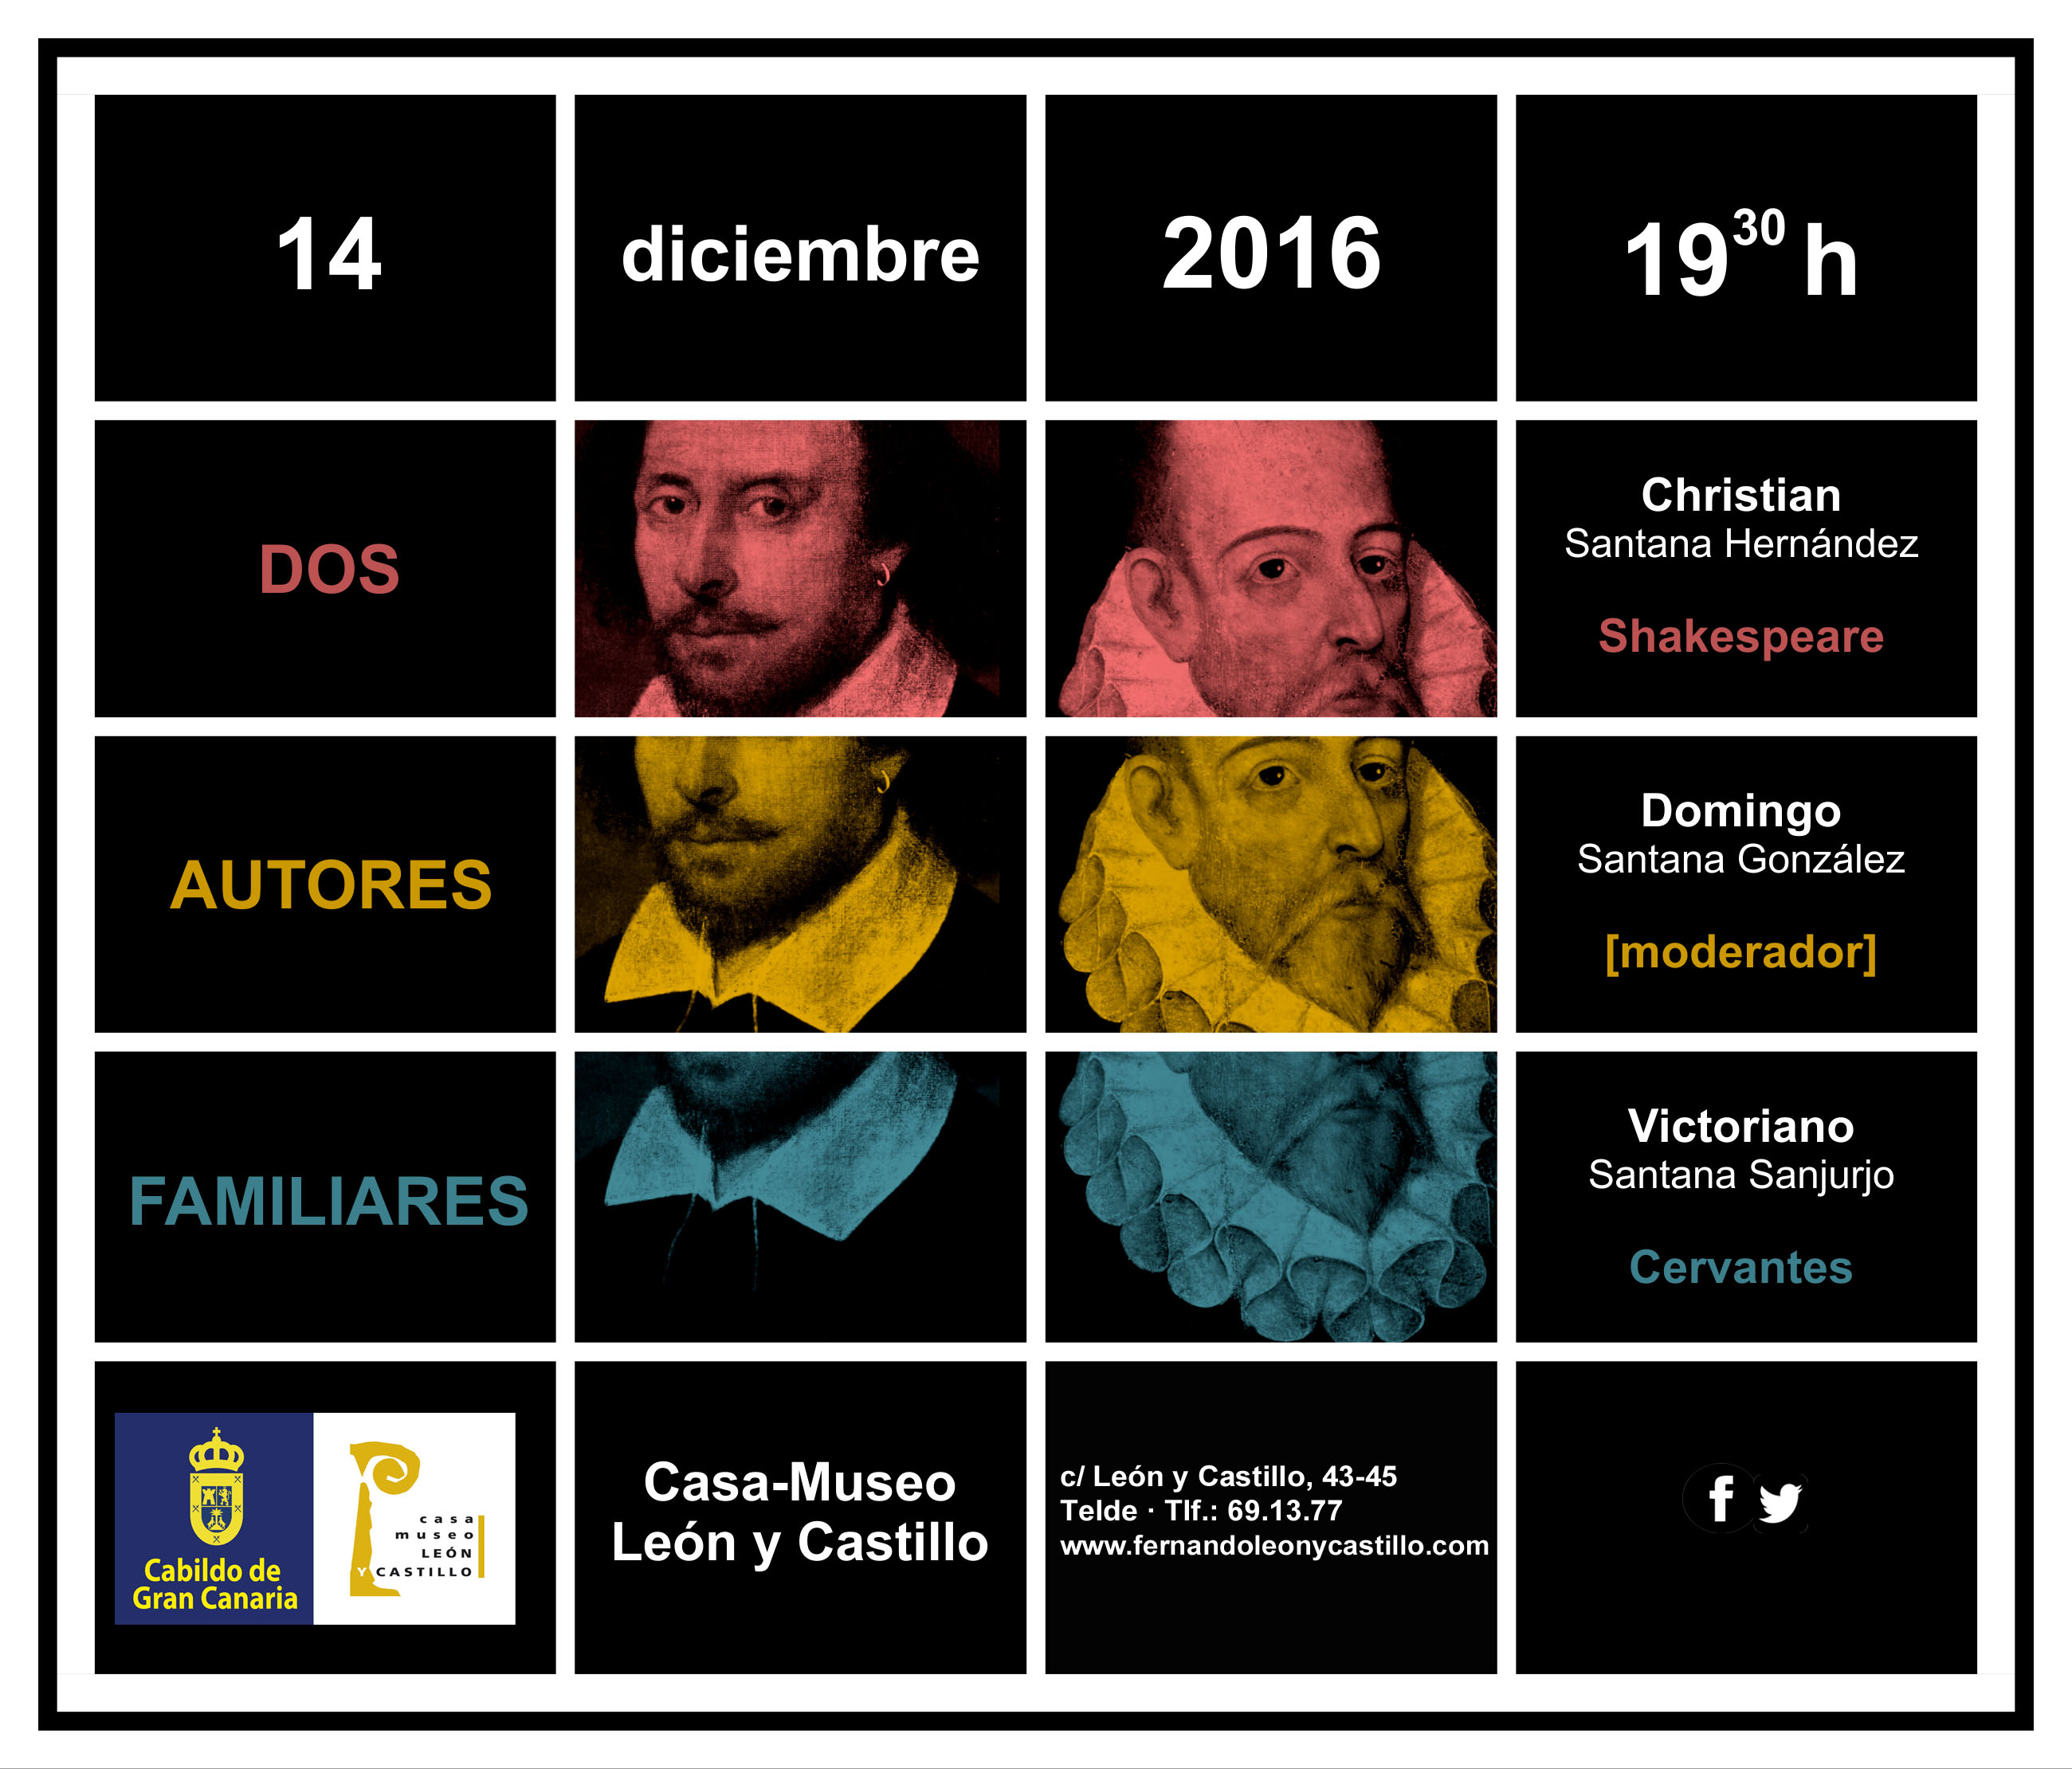 Invitación a la conferencia sobre Shakespeare y Cervantes